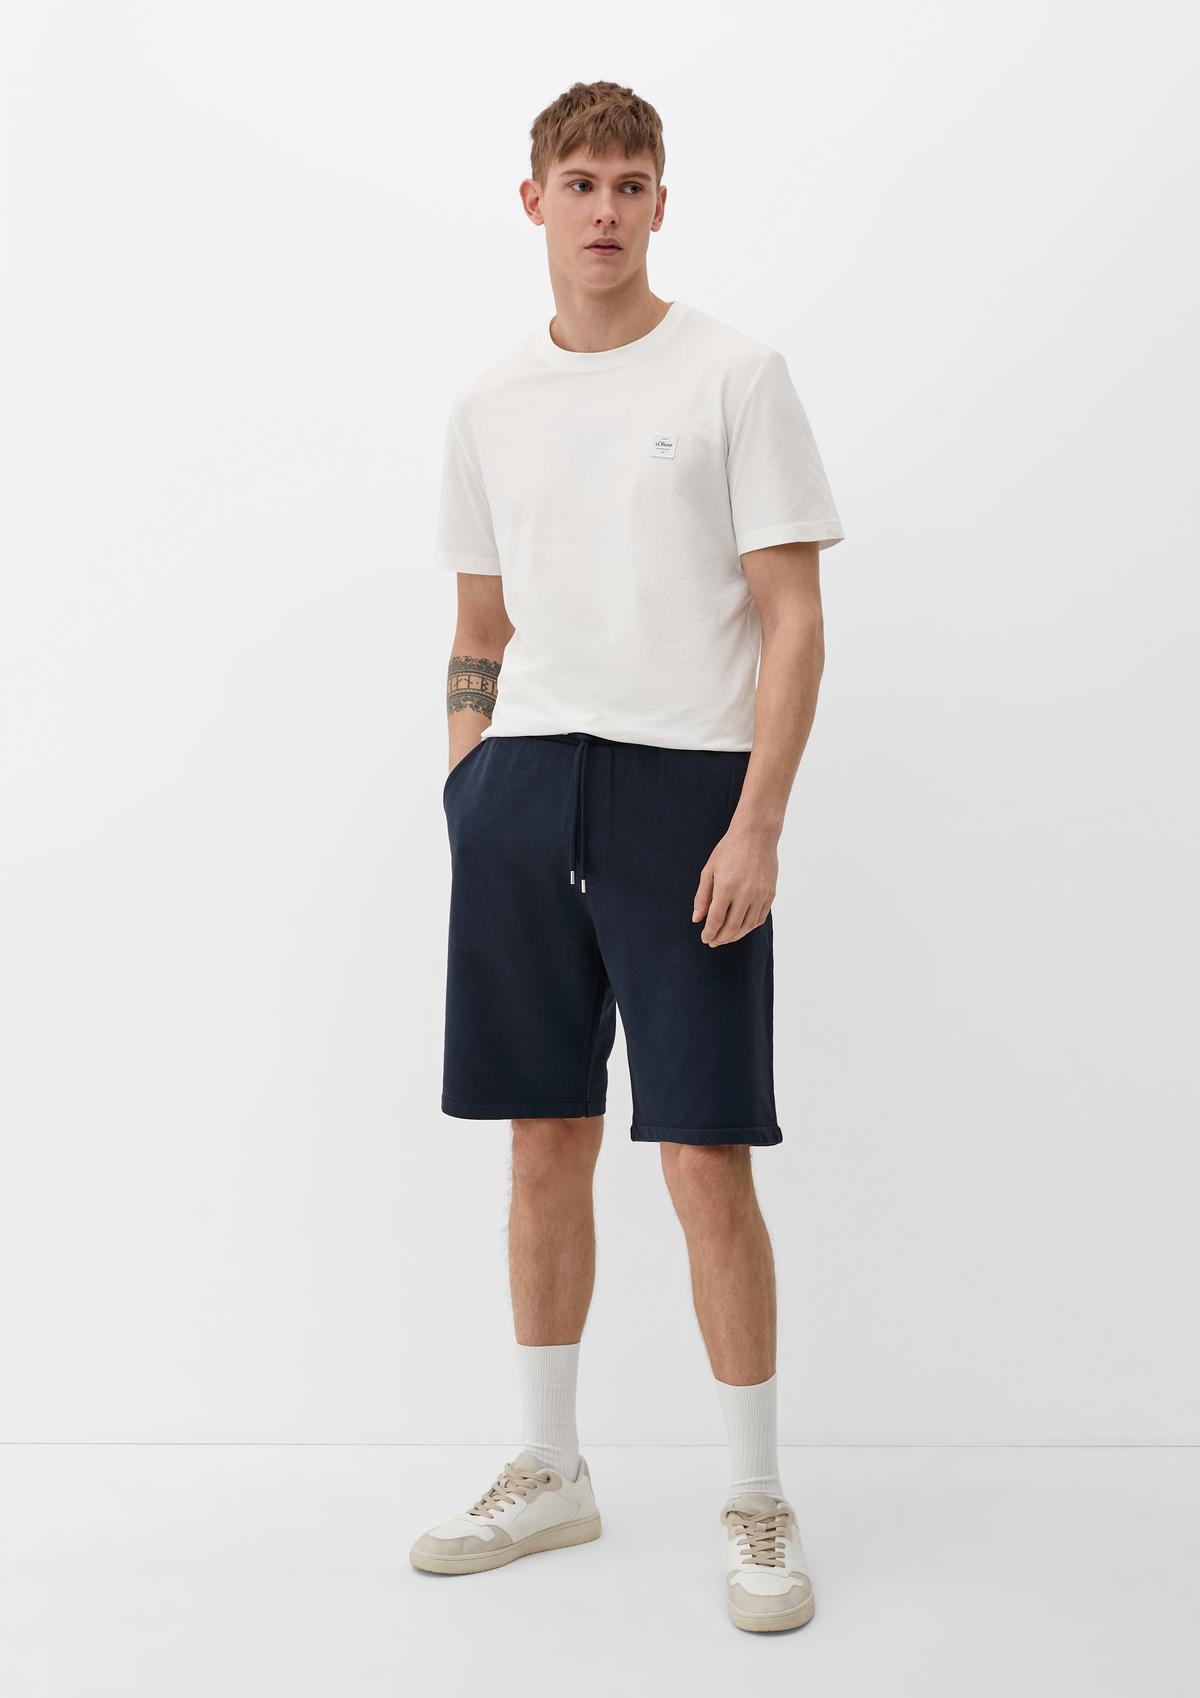 s.Oliver Relaxed: Sportske hlače s rastezljivim pojasom